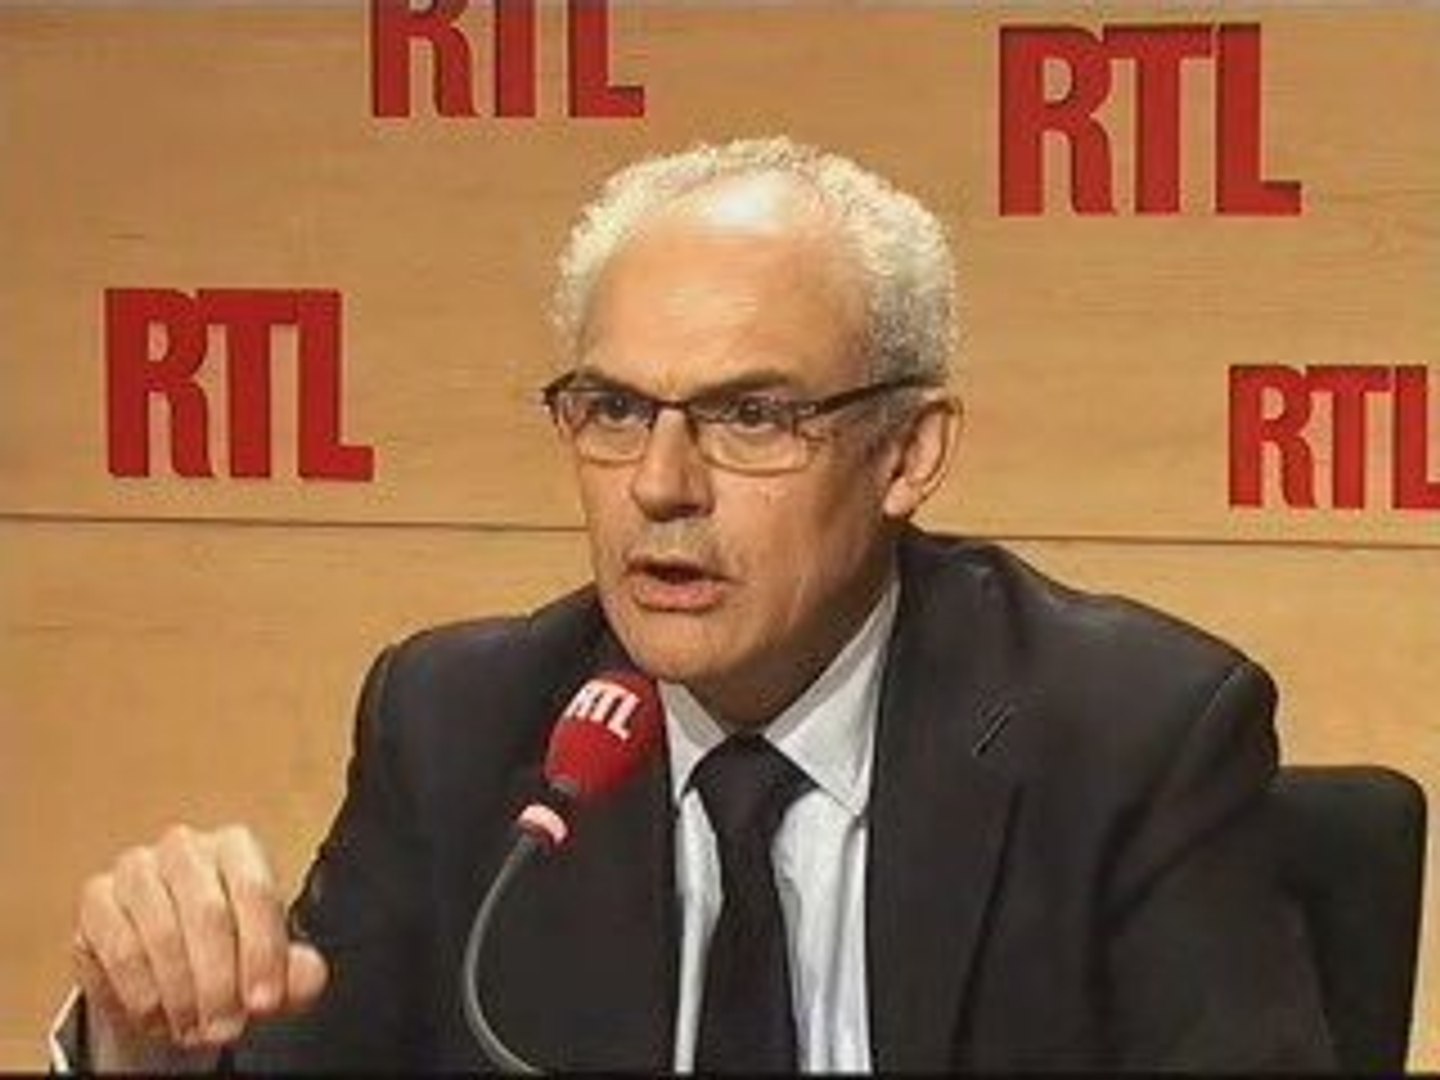 Jean-Jacques Guilbaud invité de RTL (11/03/09) - Vidéo Dailymotion